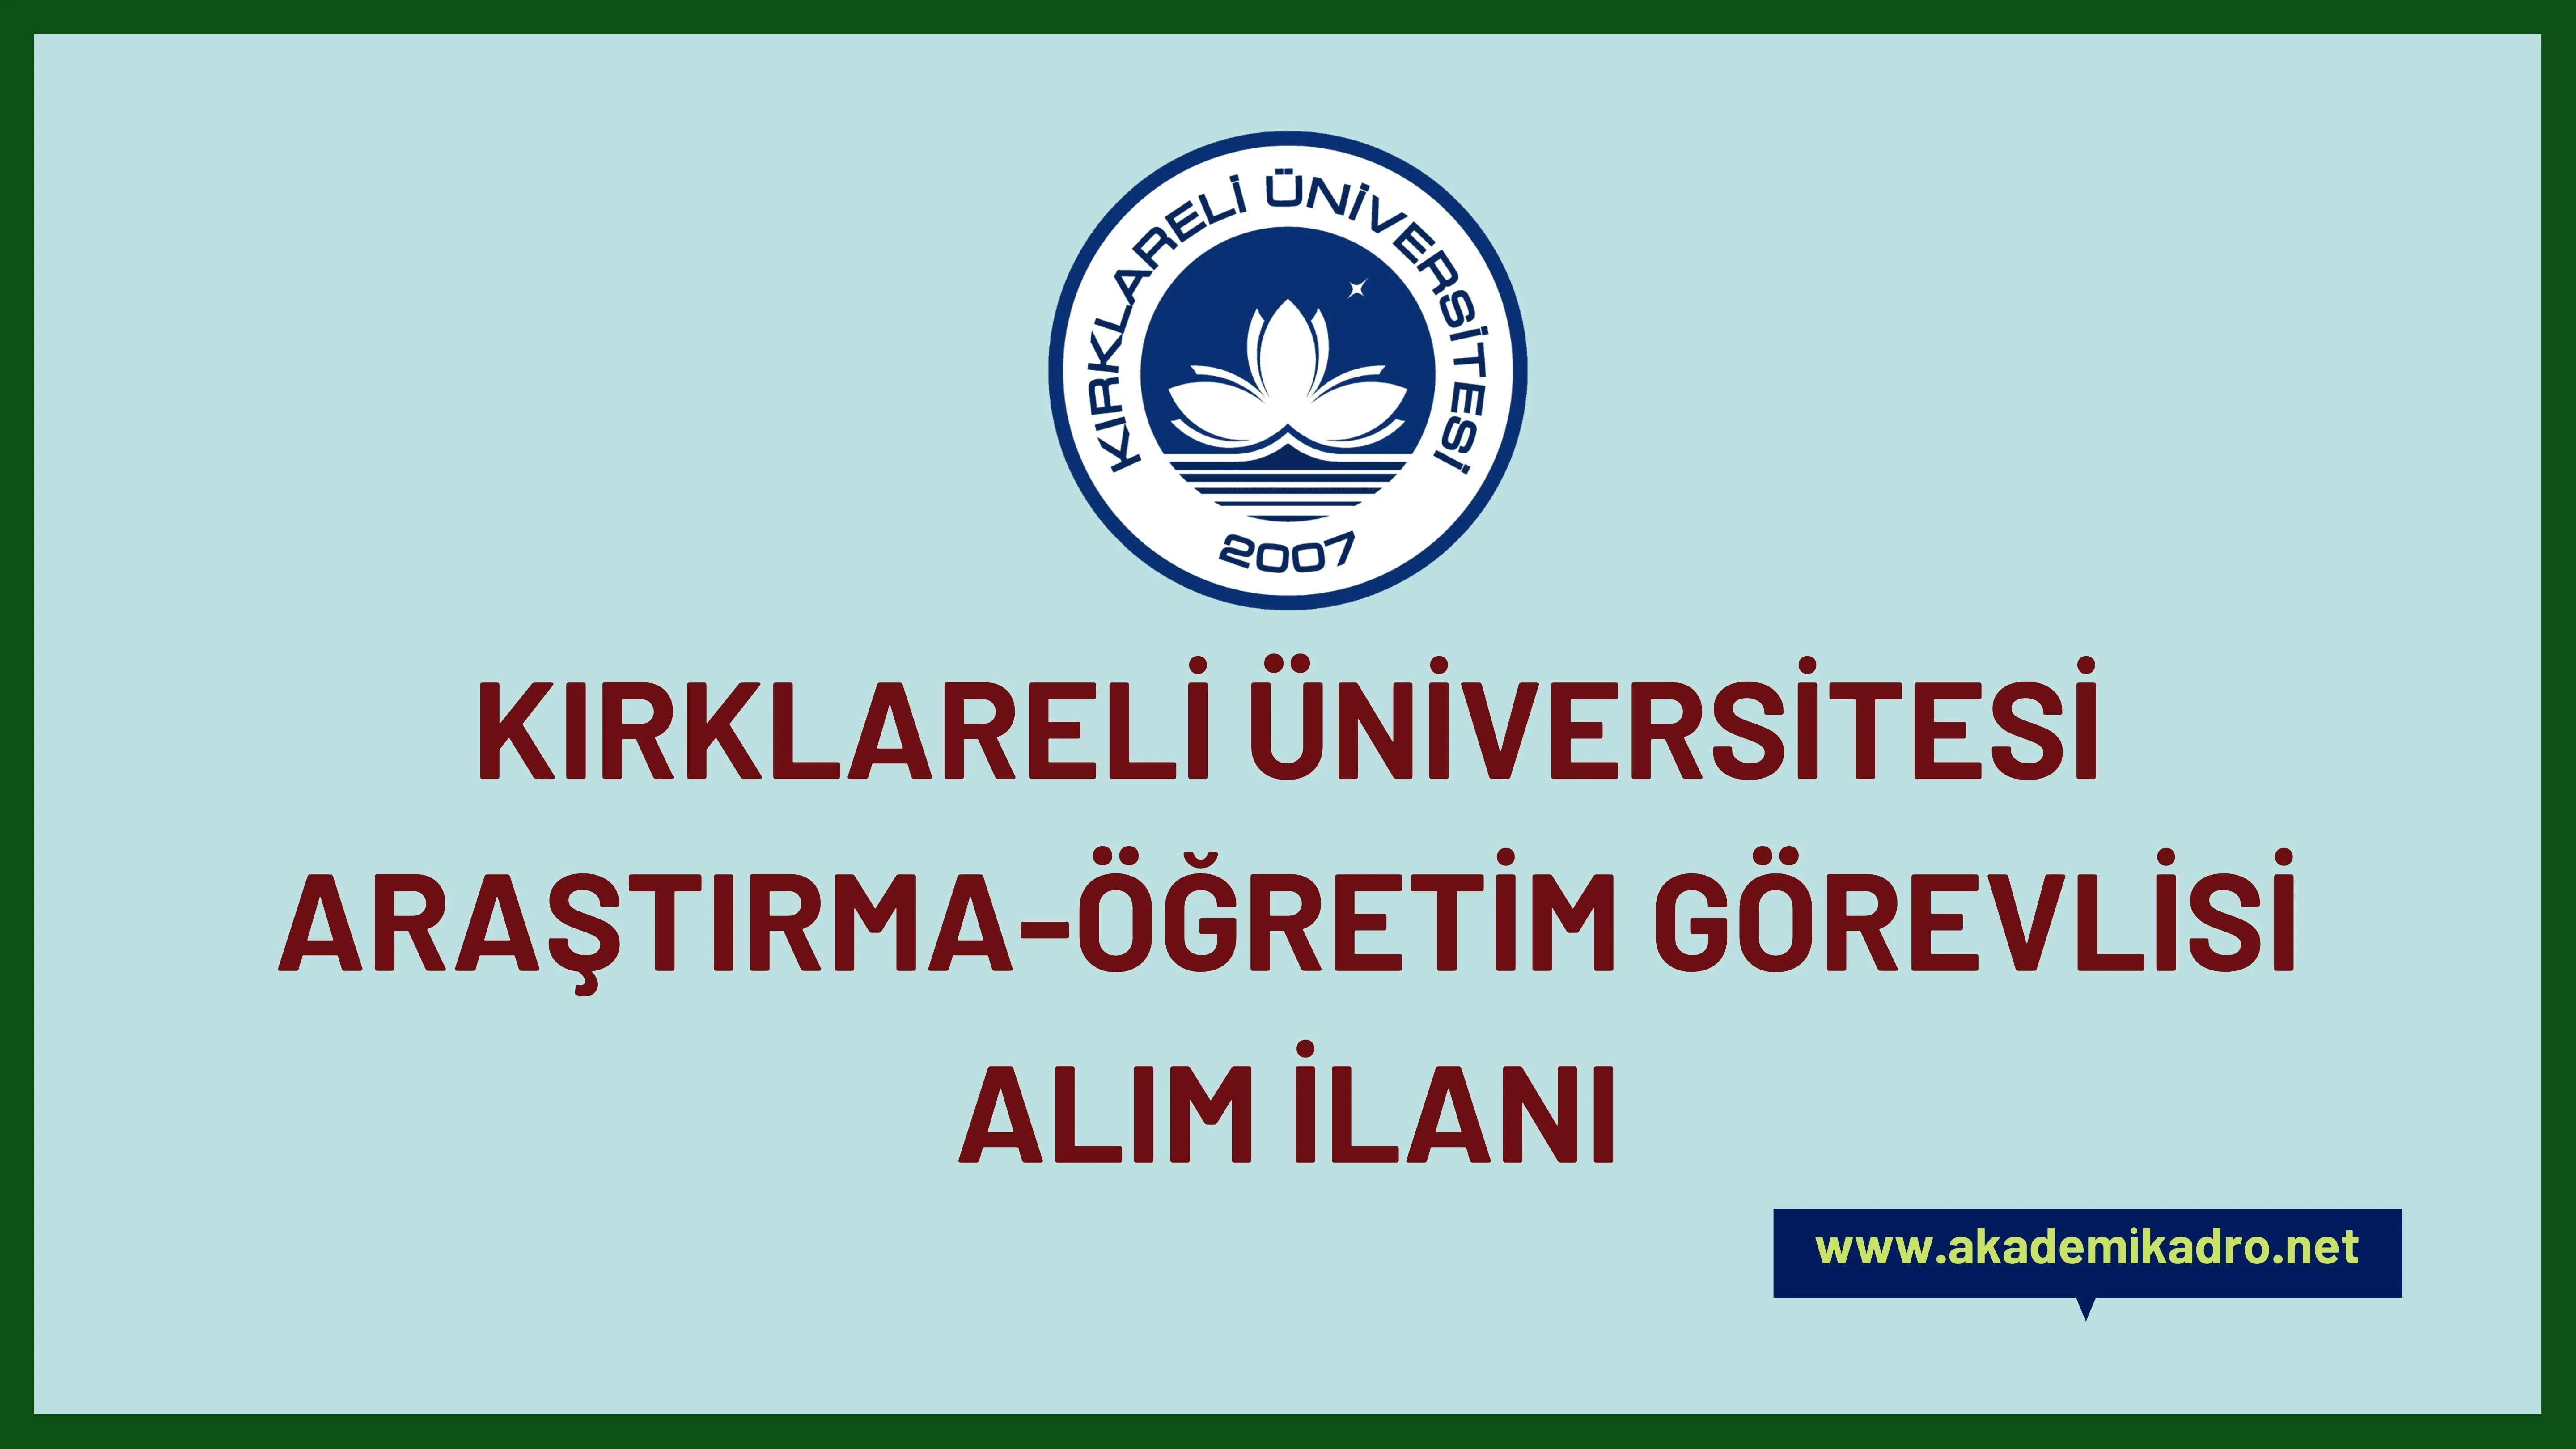 Kırklareli Üniversitesi 6 Araştırma görevlisi ve 9 Öğretim görevlisi alacaktır. Son başvuru tarihi 15 Kasım 2022